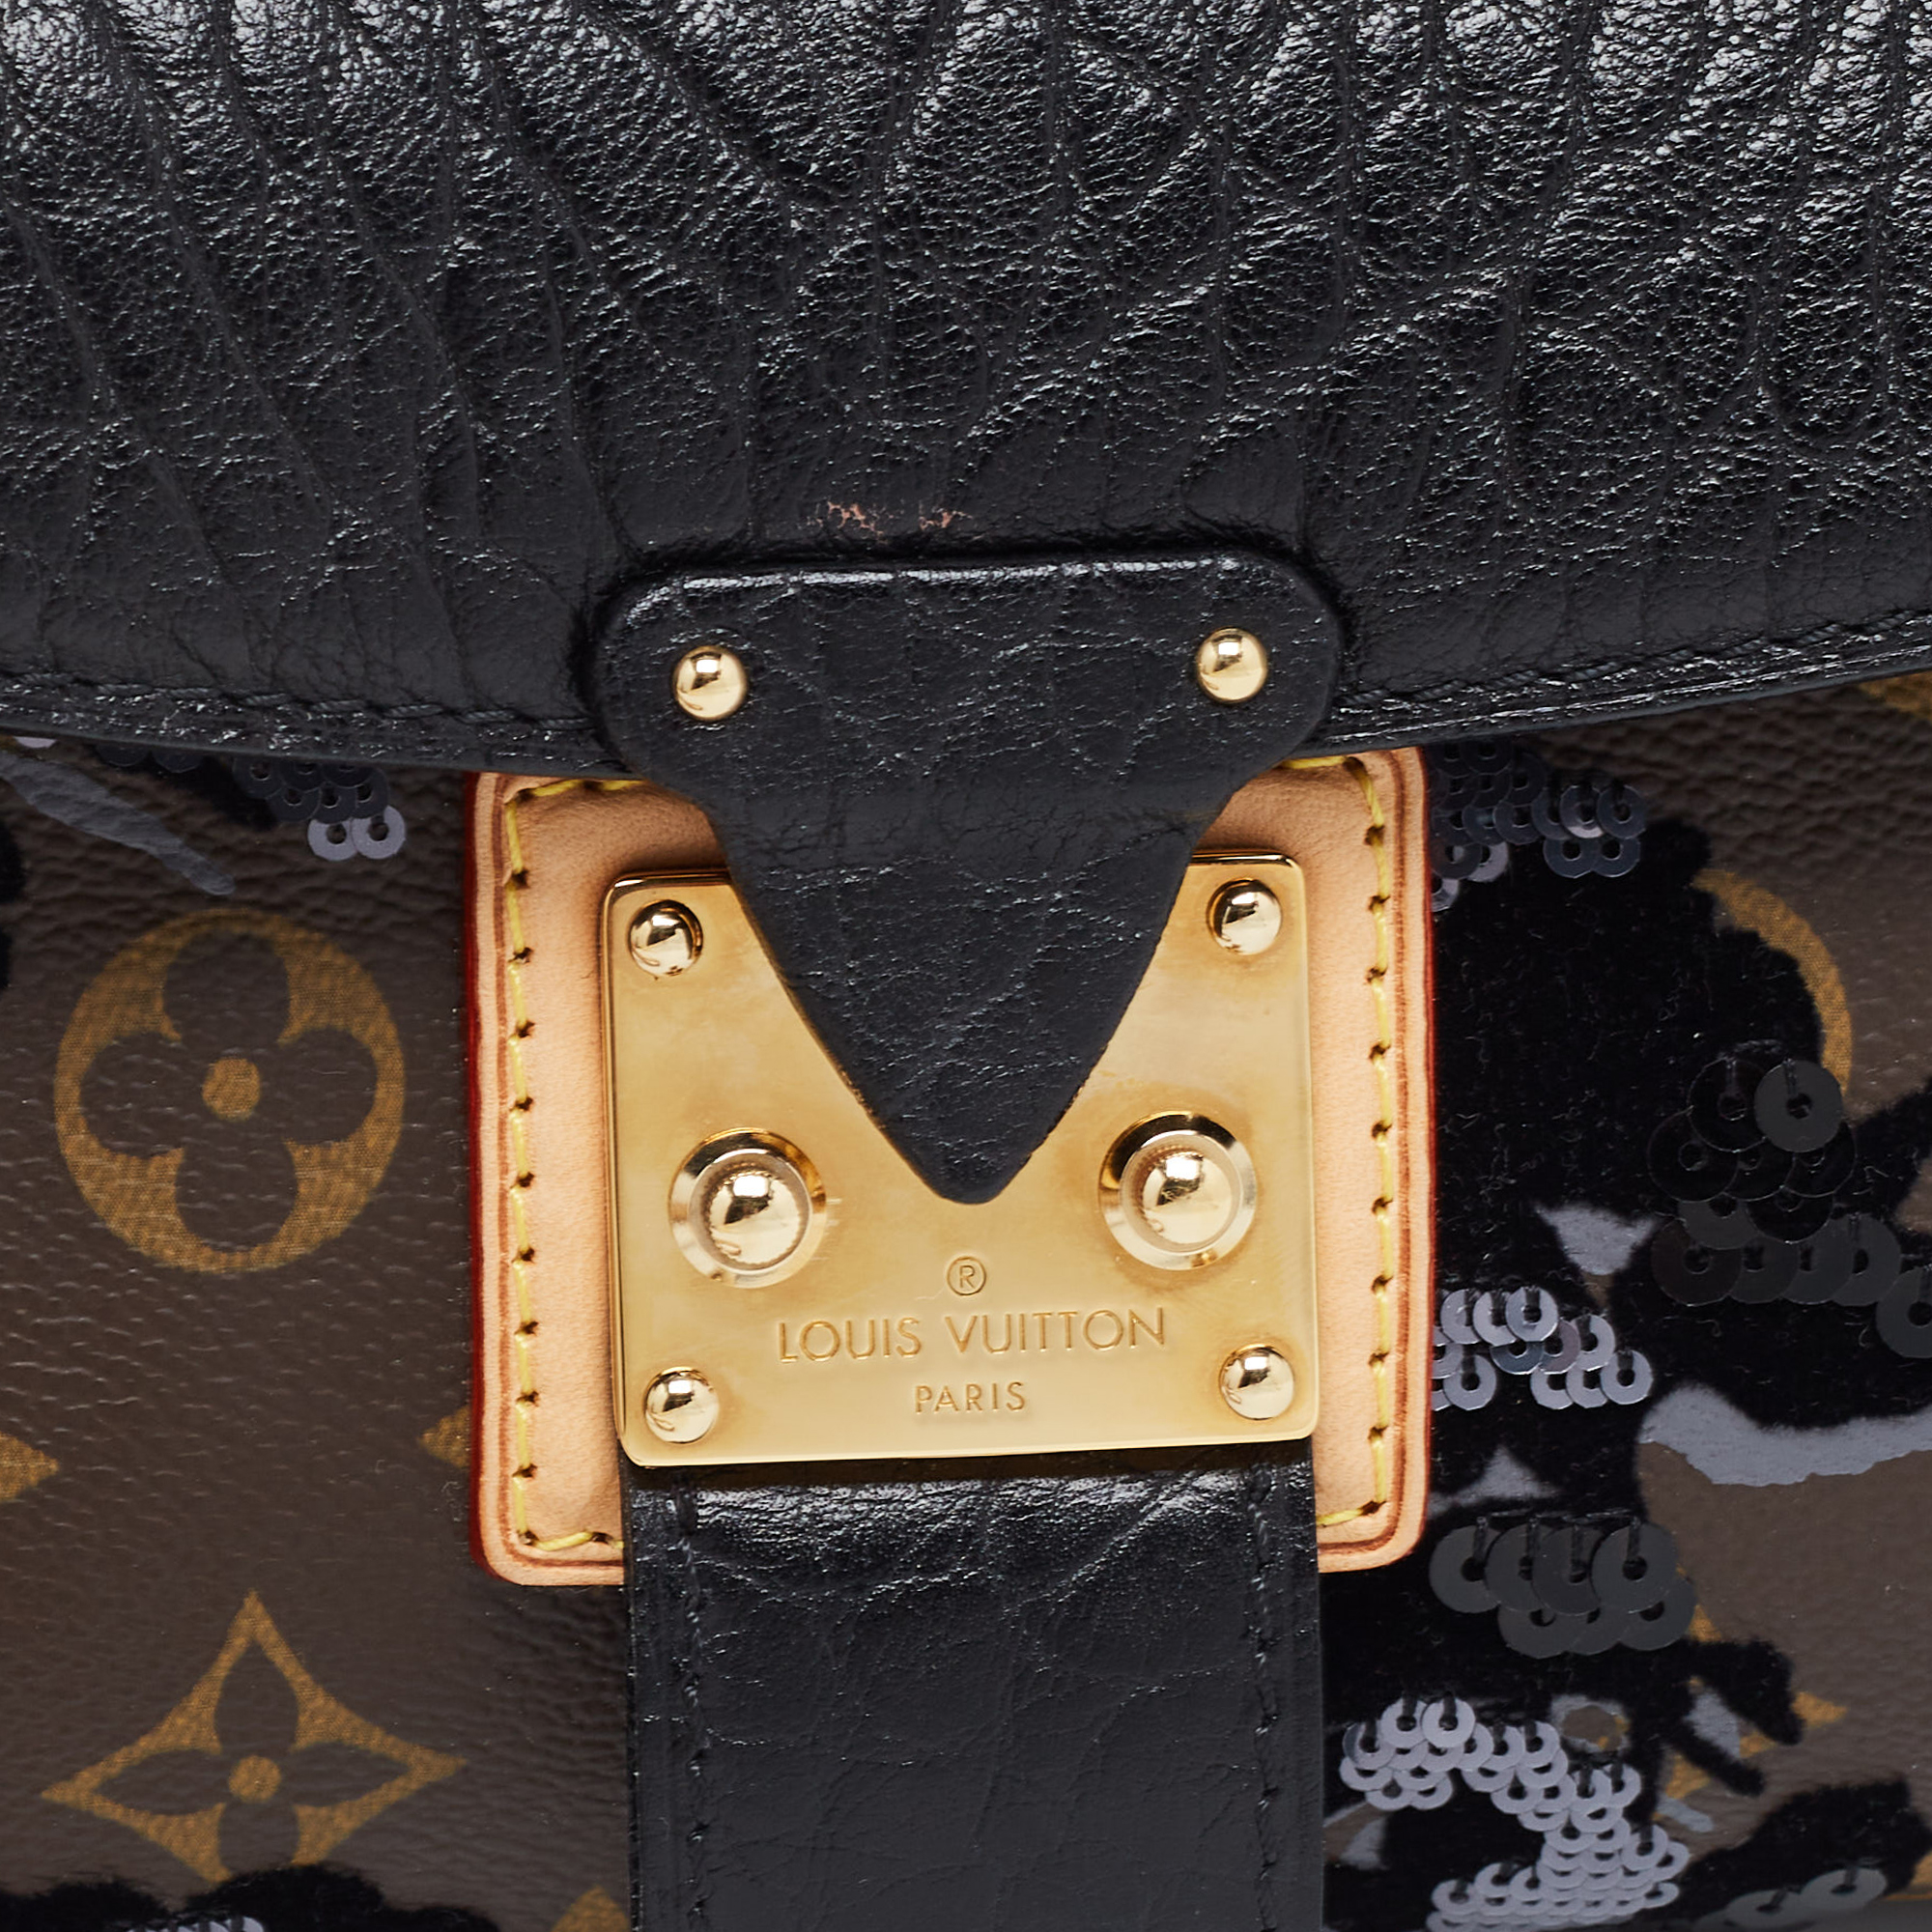 Louis Vuitton Black/Monogram Canvas And Leather Limited Edition Fleur De Jais Manege Clutch